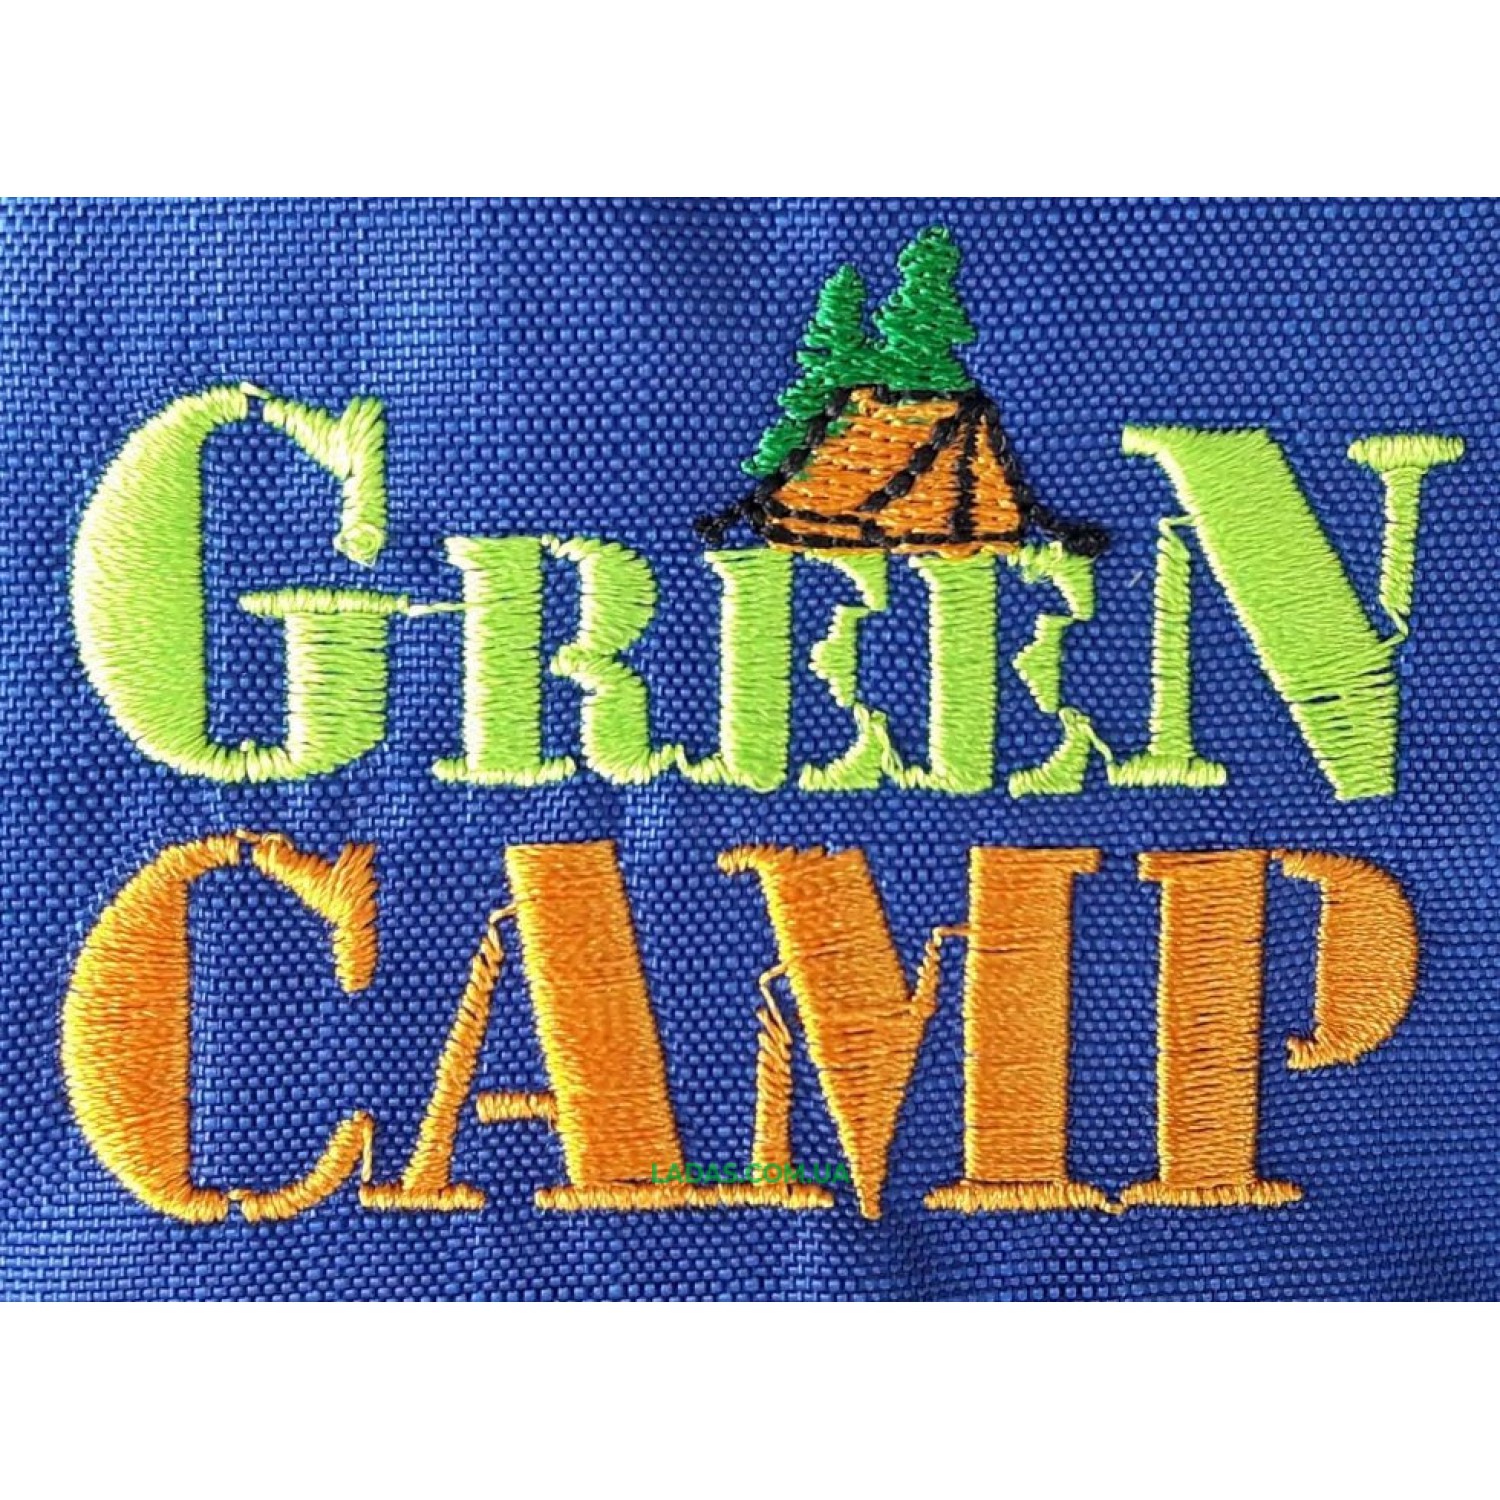 Палатка двухместная Green Camp GC-3005